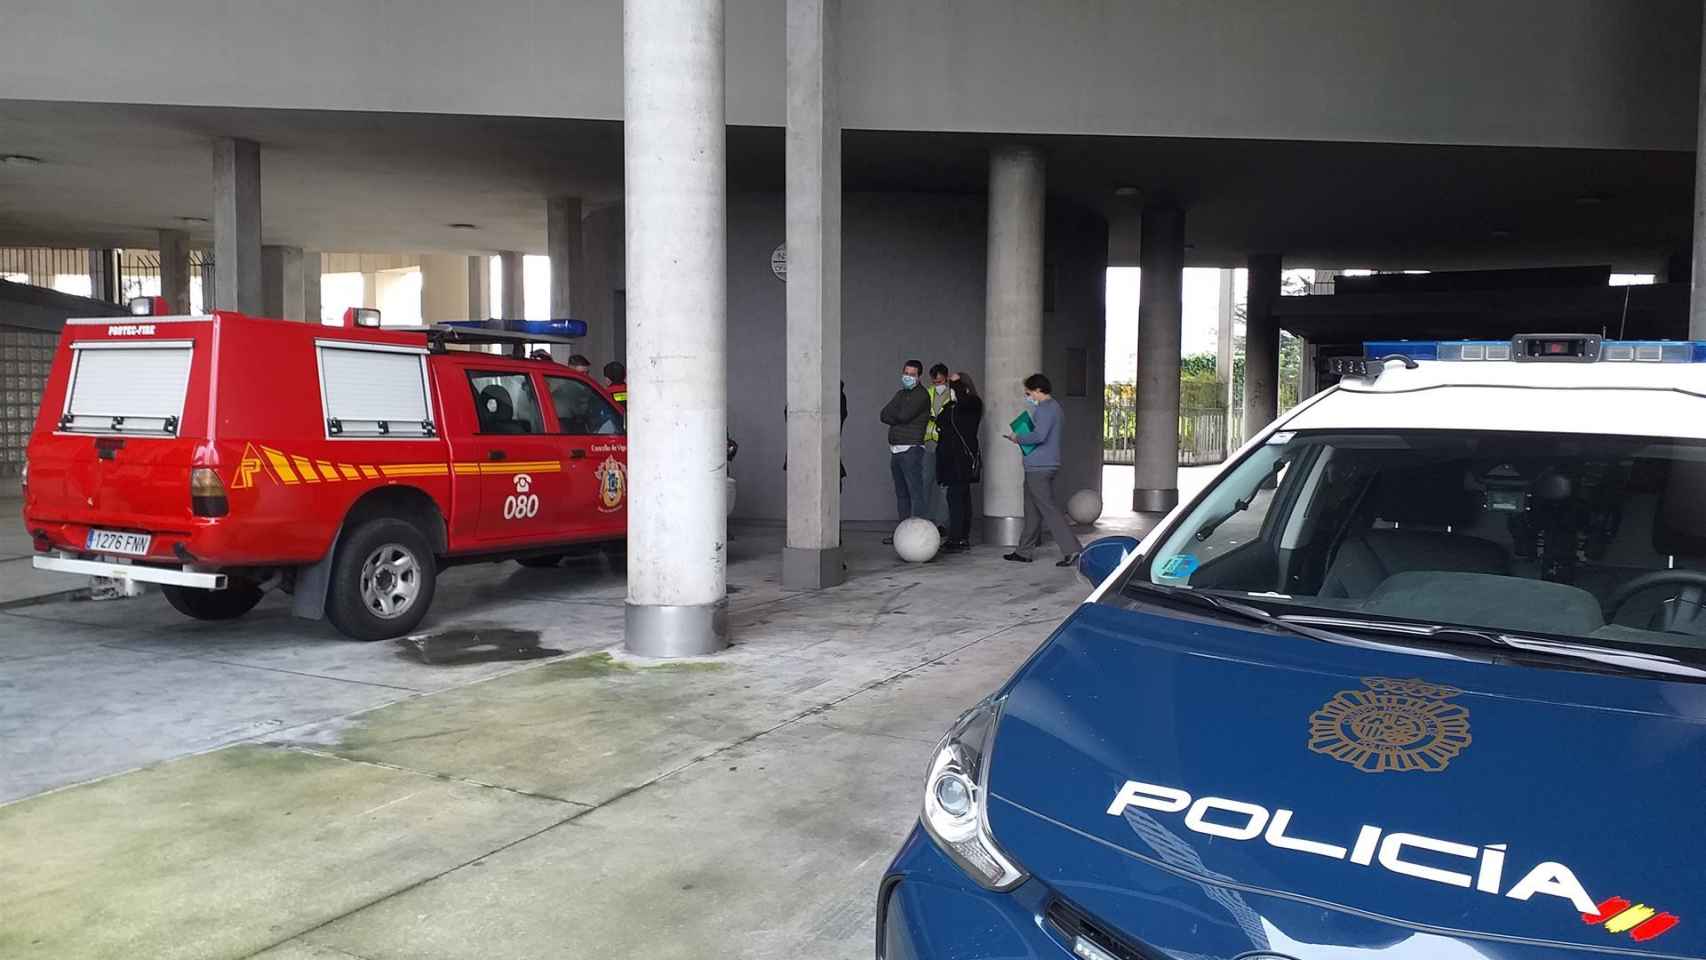 Acceso al edificio de Teixugueiras 17, en Vigo, donde un incendio declarado en el garaje afectó a más de una treintena de vehículos.